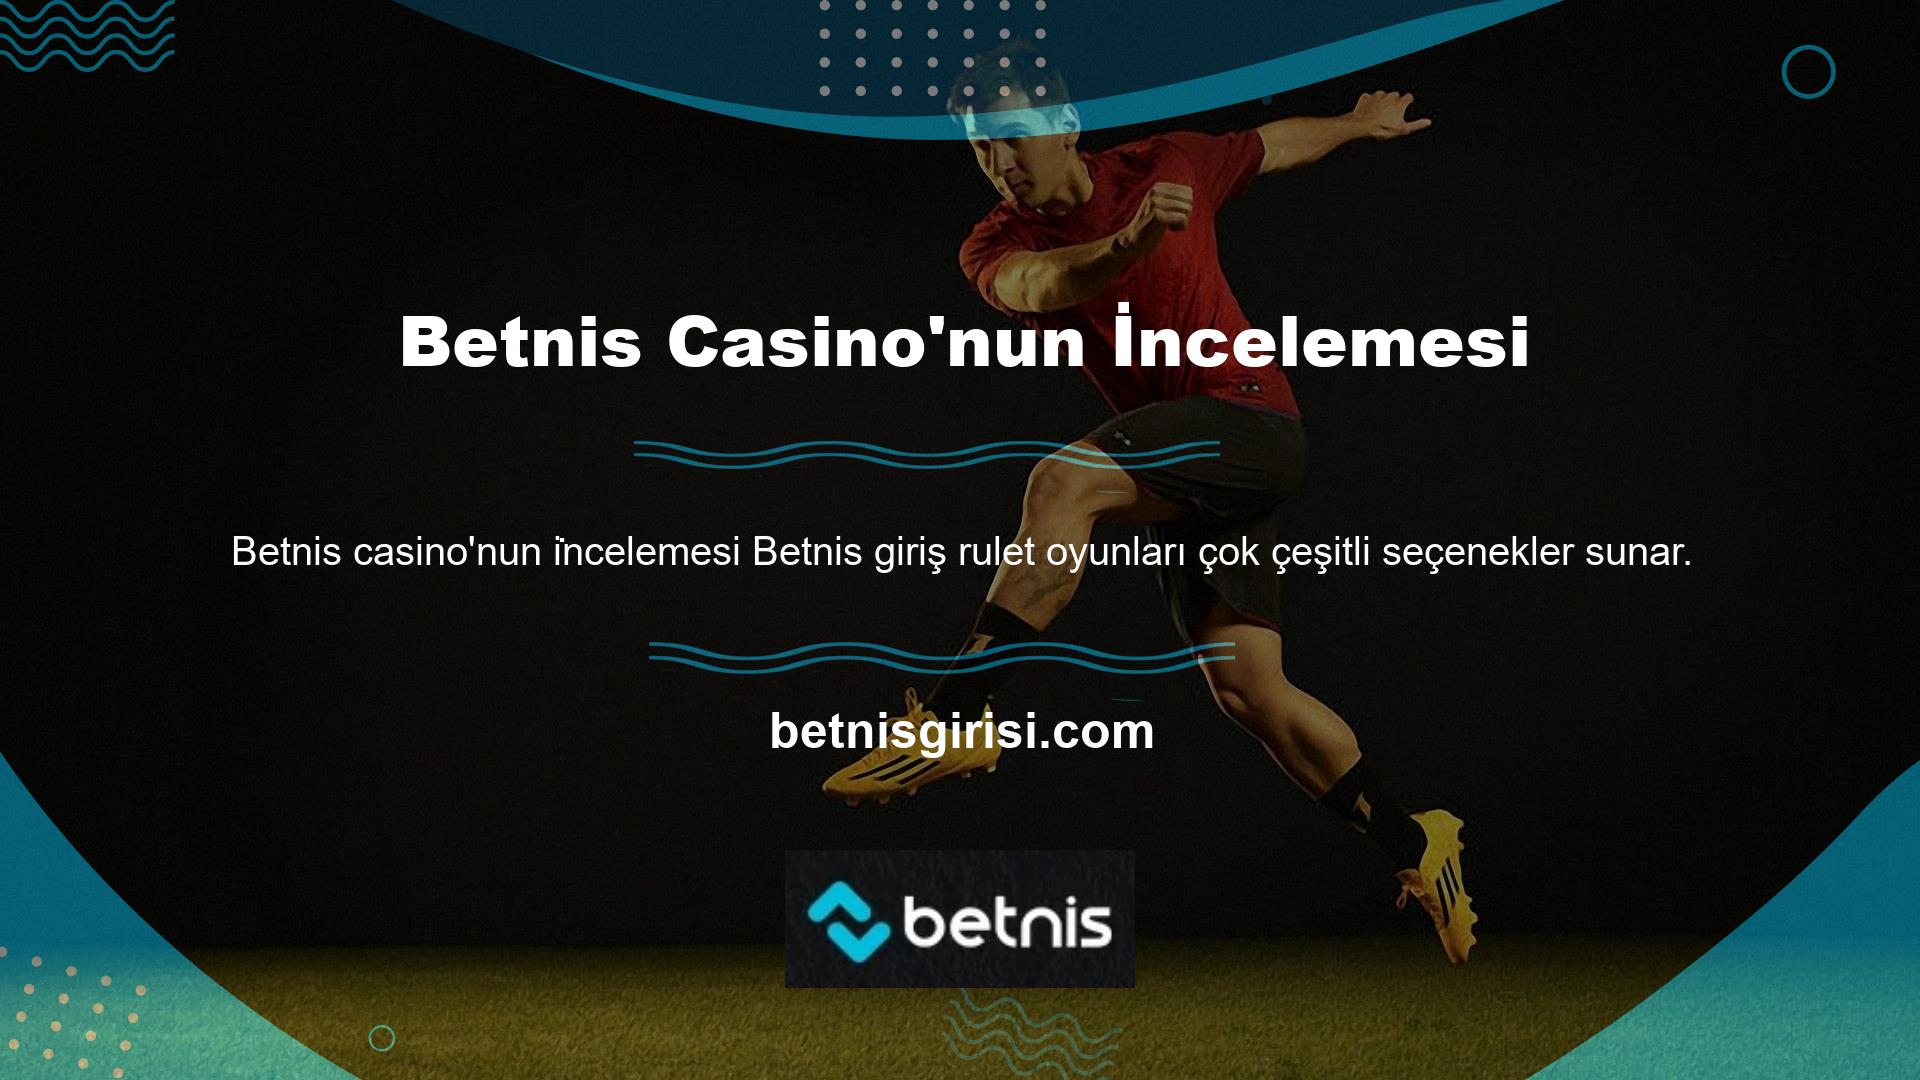 Tüm olumsuzluklara rağmen, Betnis casino incelemesi her zaman Türk oyuncuları hatırlayacak ve oyunda onların yerine geçecektir